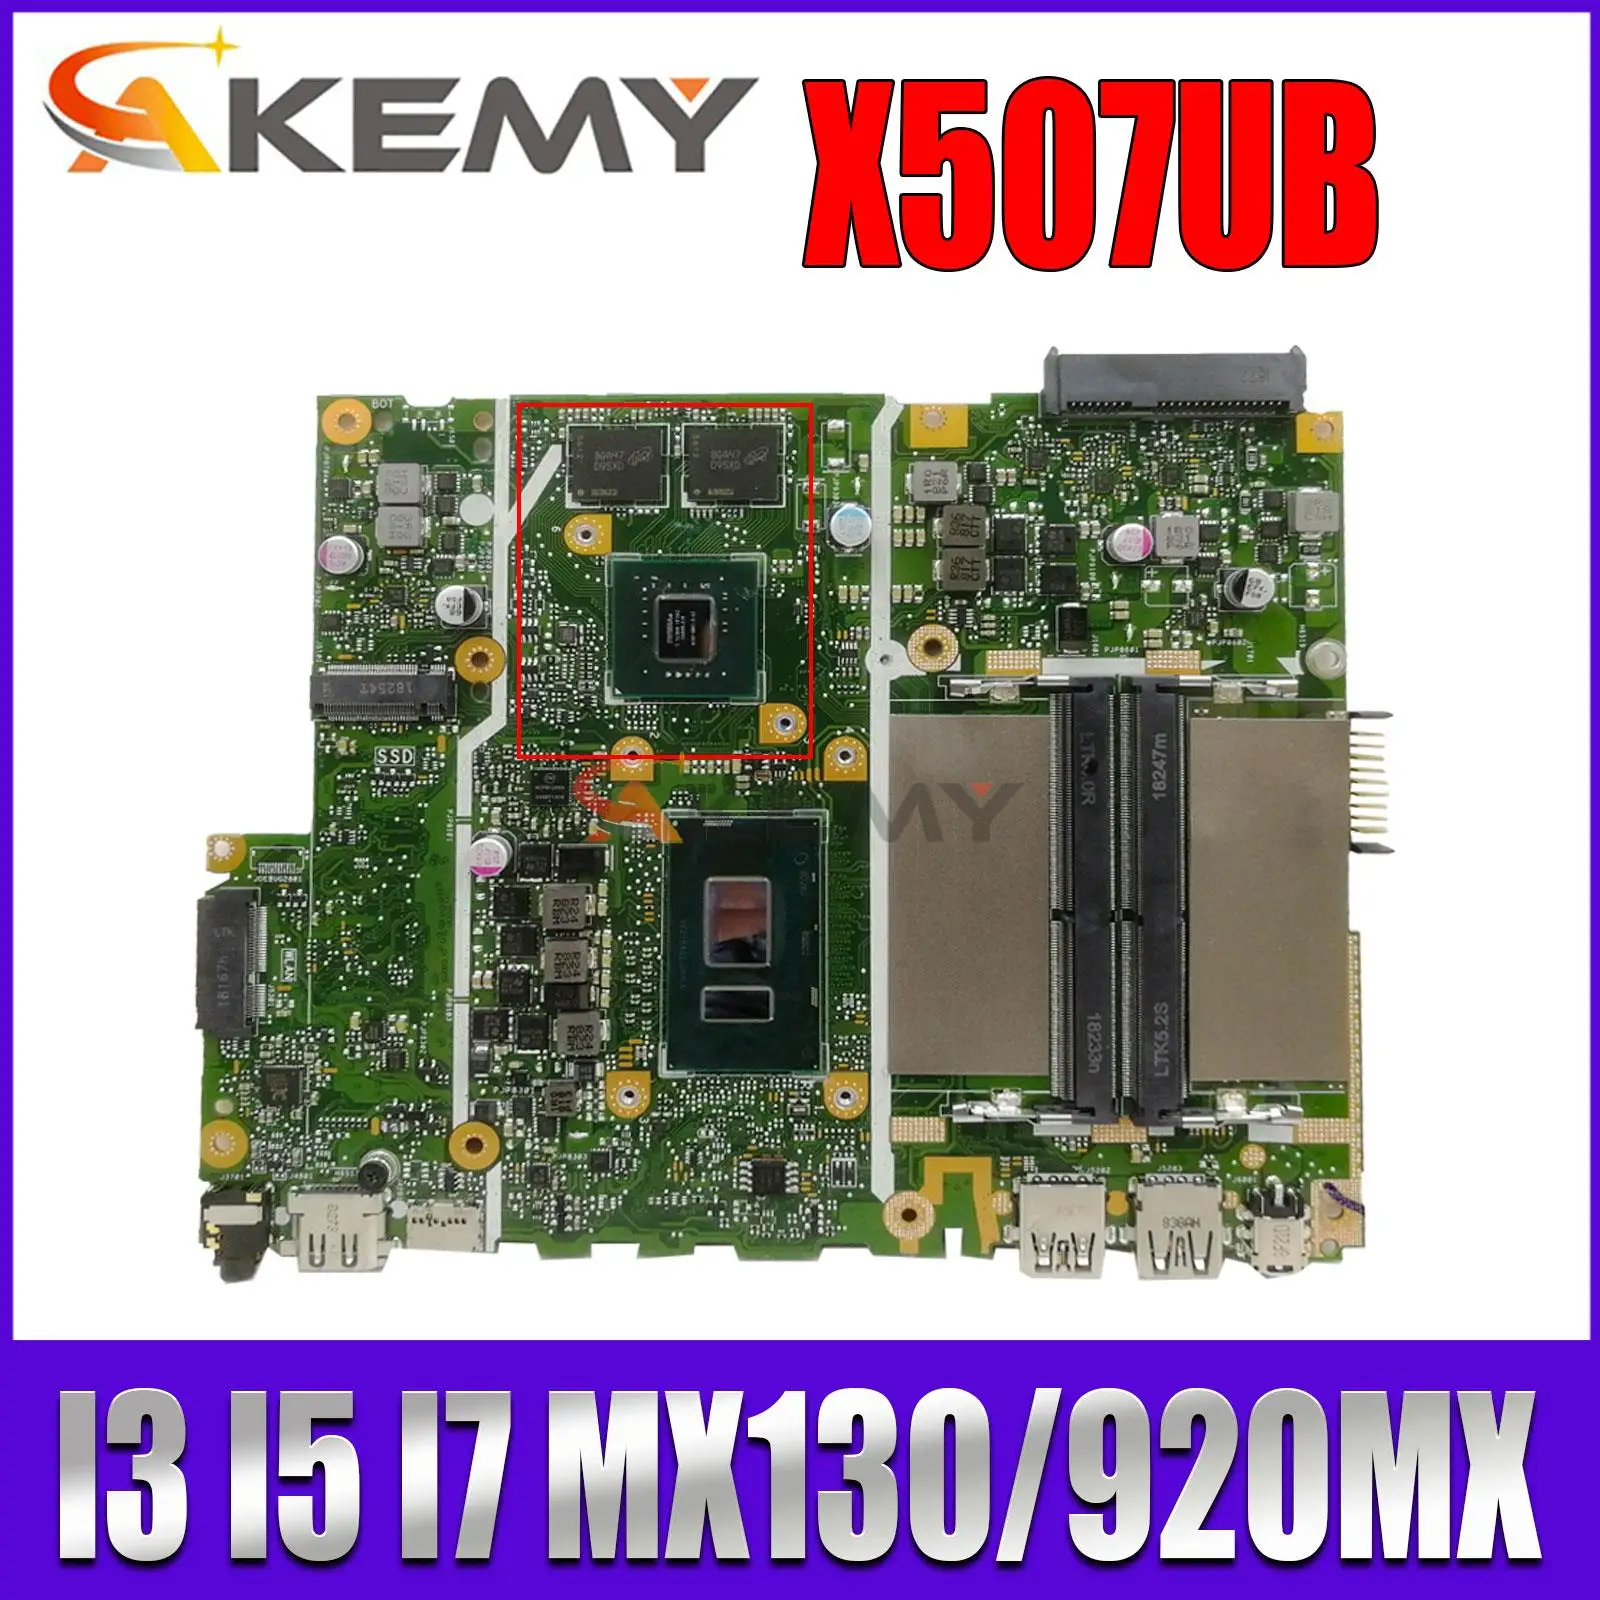 

X507UB Mainboard For ASUS X507UBR X507UF A507UB F507UB R507UB A507UF Y5000UB Laptop Motherboard I3 I5 I7 6th/7th/8th